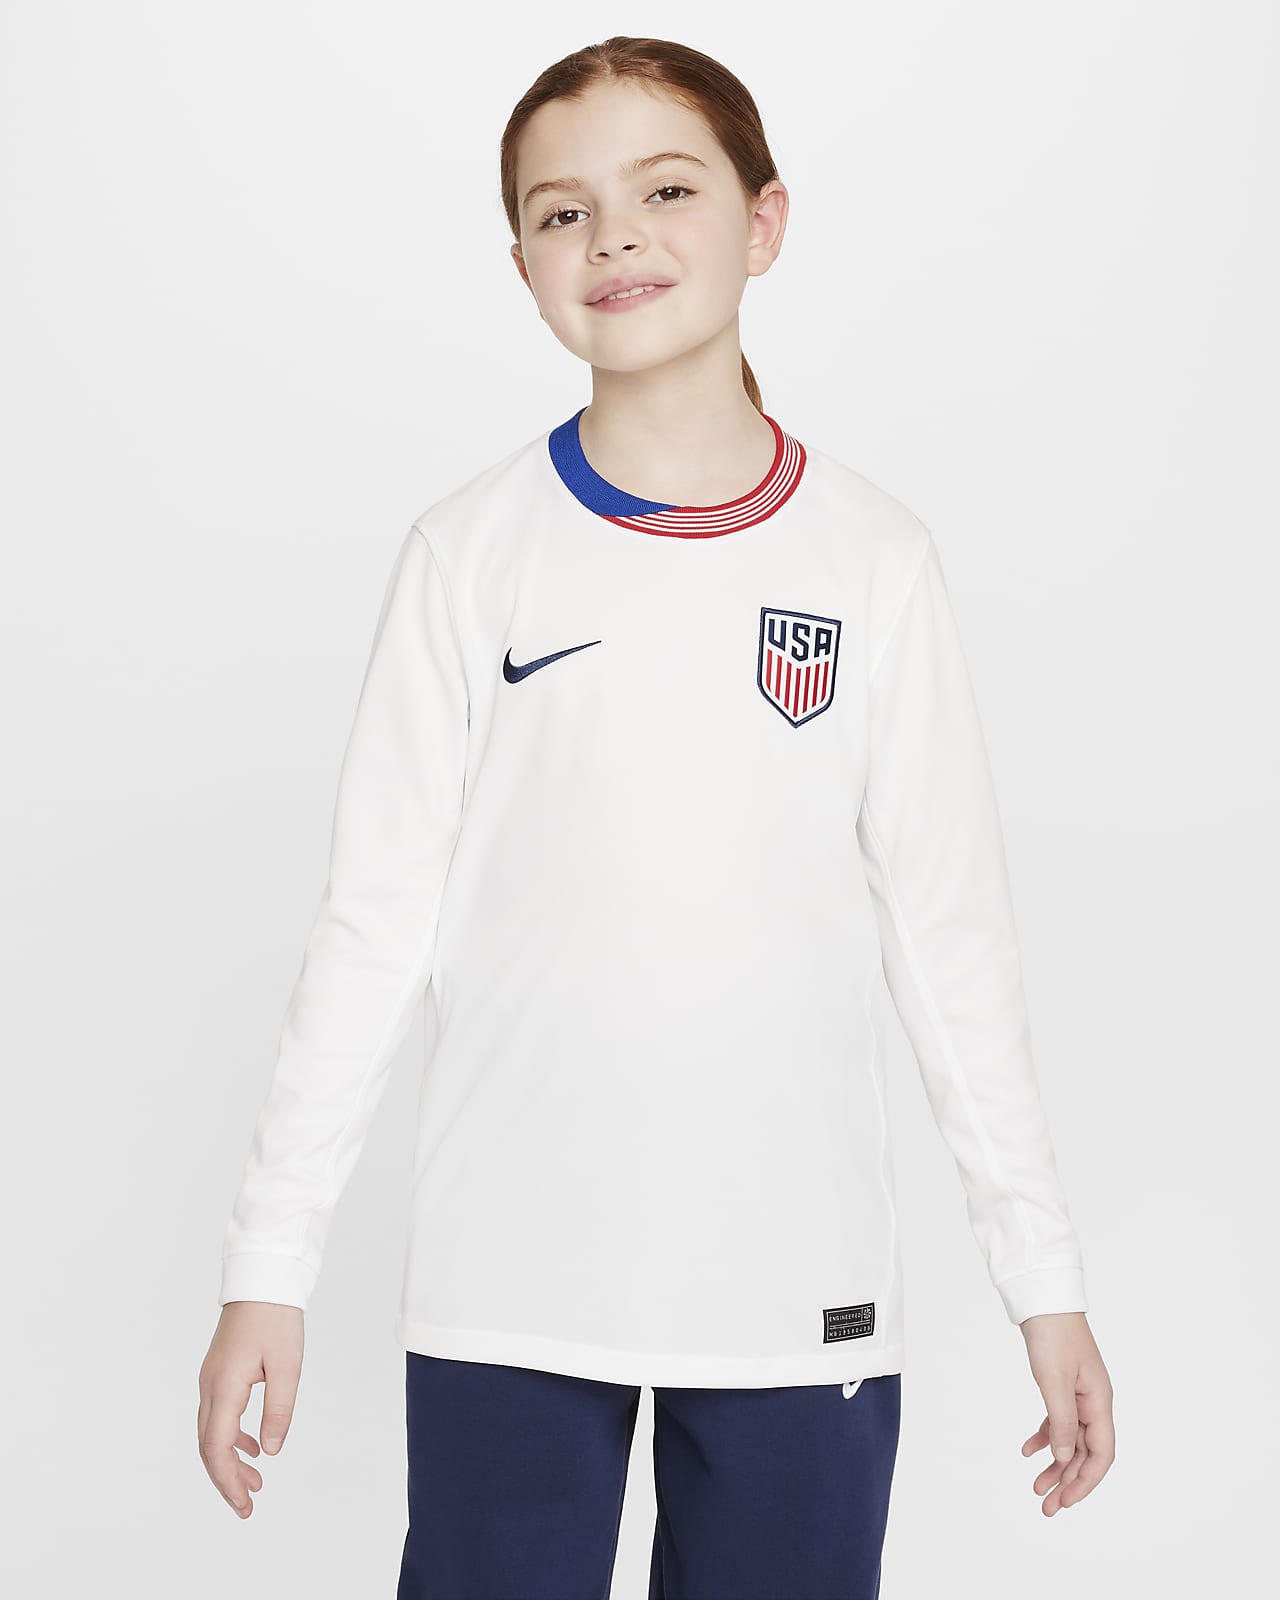 Jersey de fútbol de manga larga Nike Dri-FIT replica de la selección femenina de fútbol de los Estad os Unidos 2024 Stadium local para niño talla grande